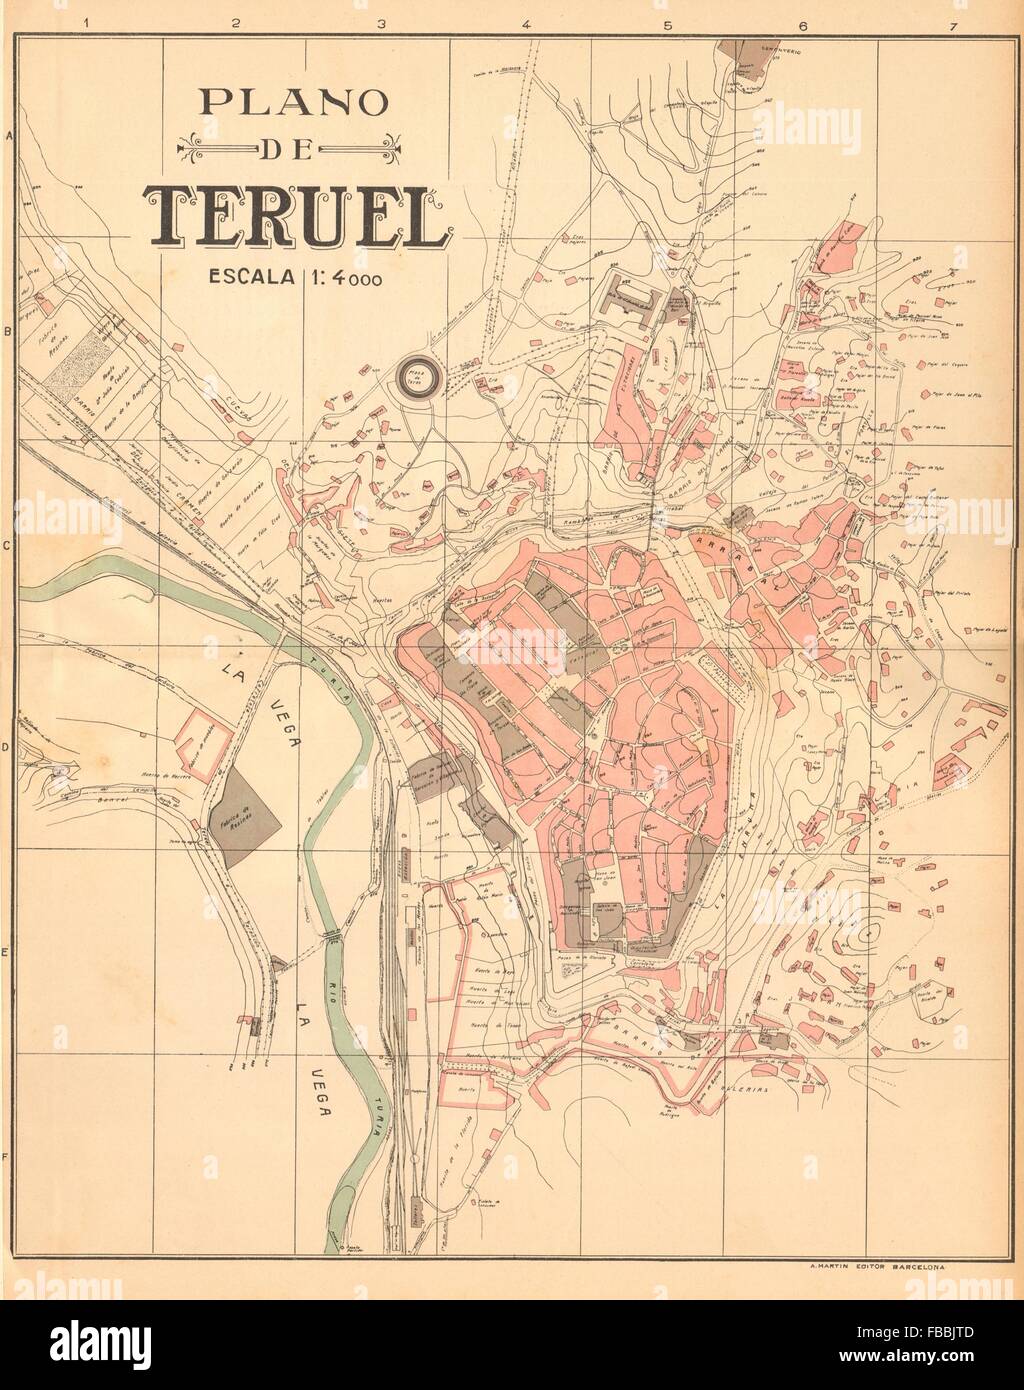 TERUEL. Plano antiguo de la cuidad. Antique town/city plan. MARTIN, c1911 map Stock Photo